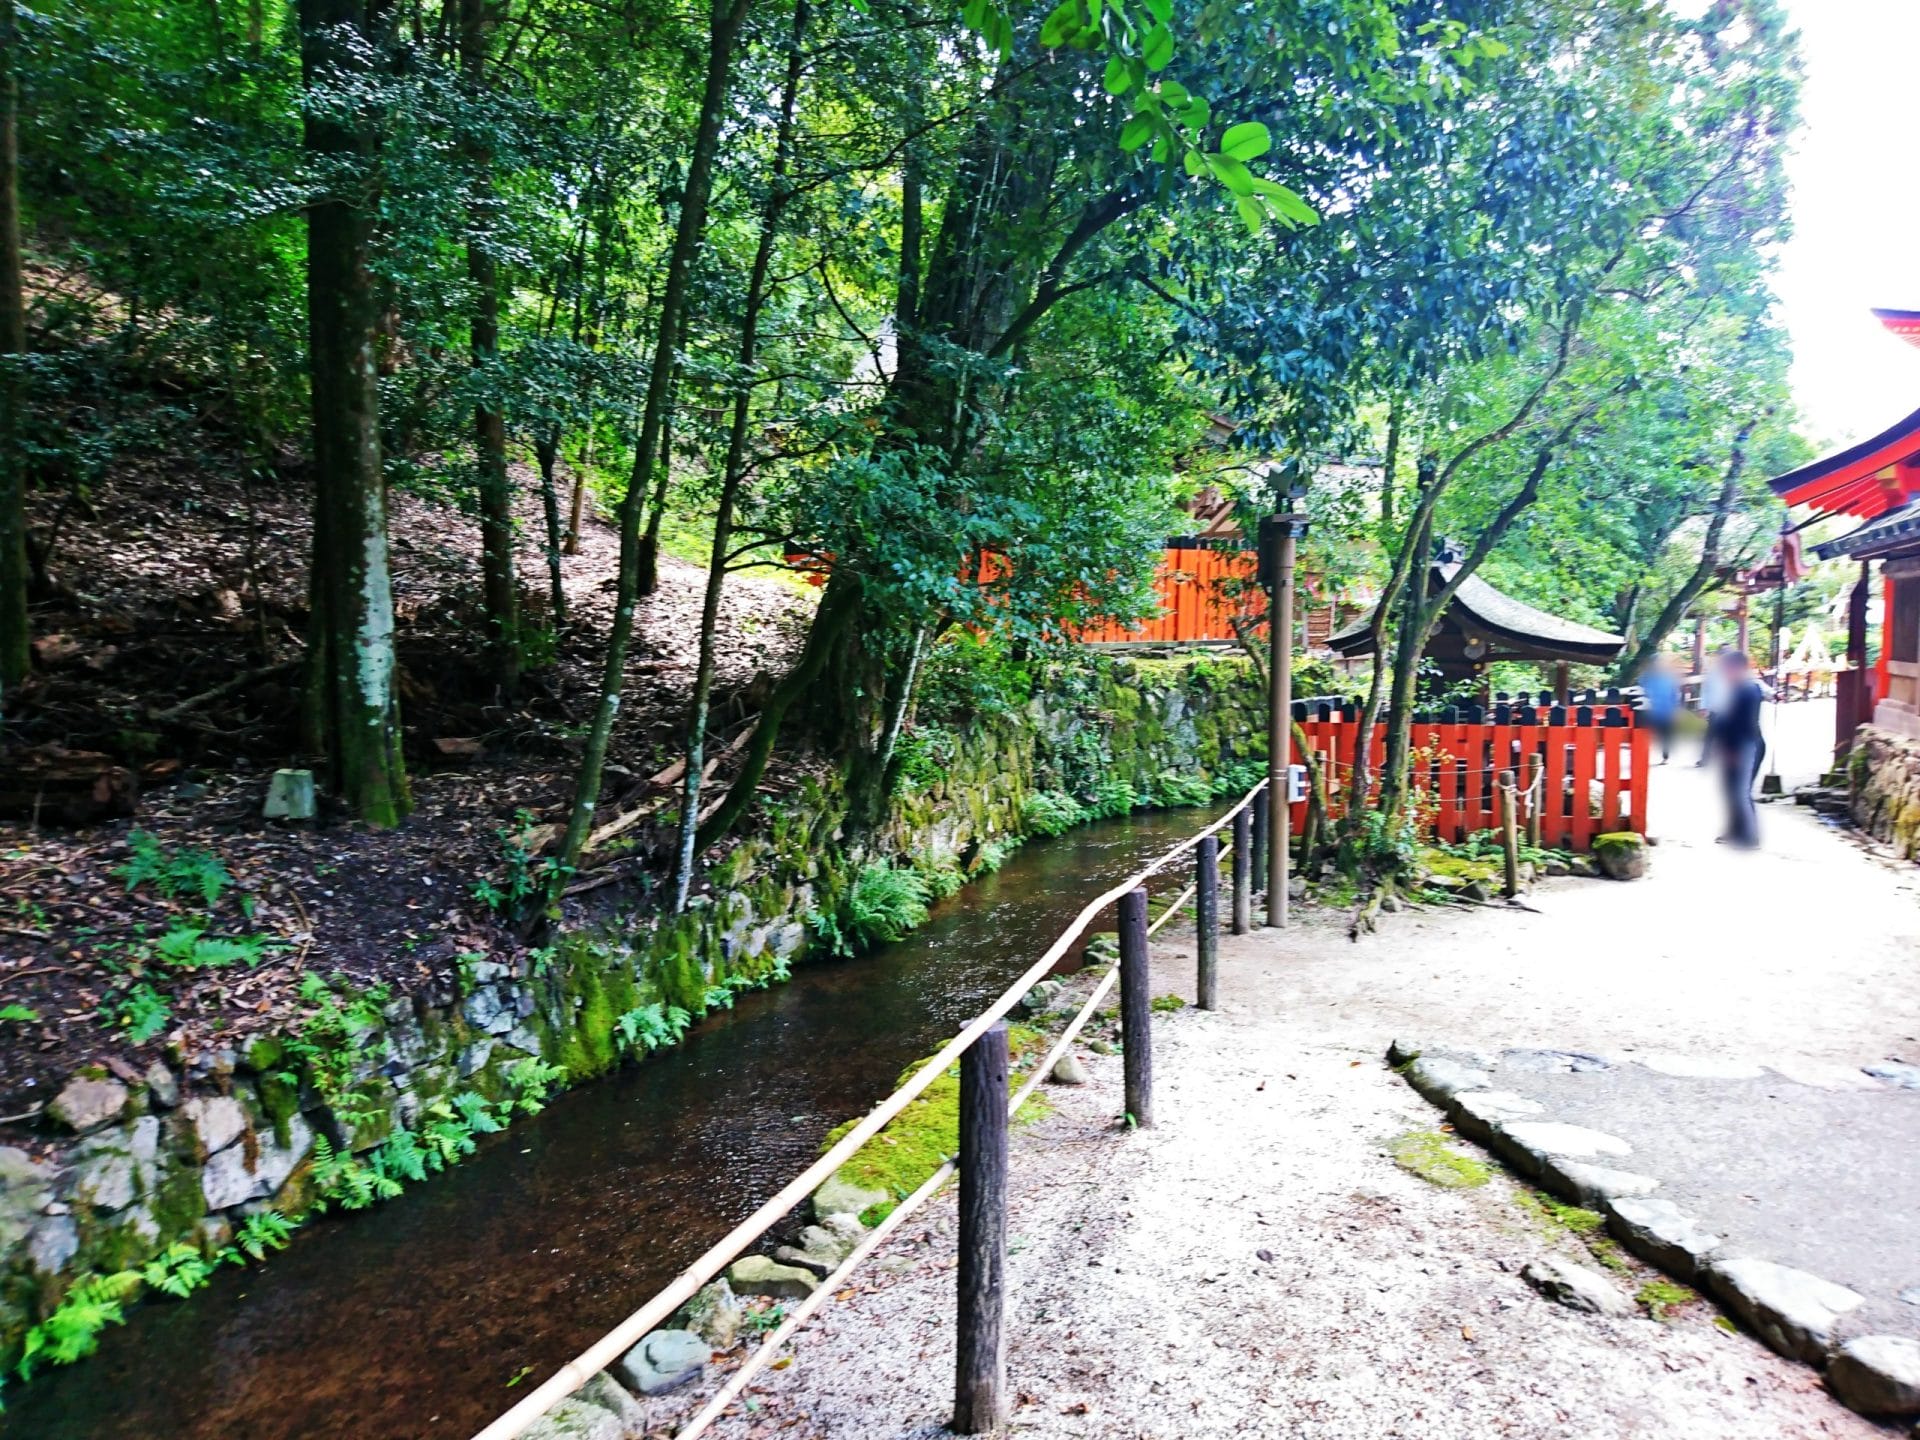 上賀茂神社の境内を流れる小川